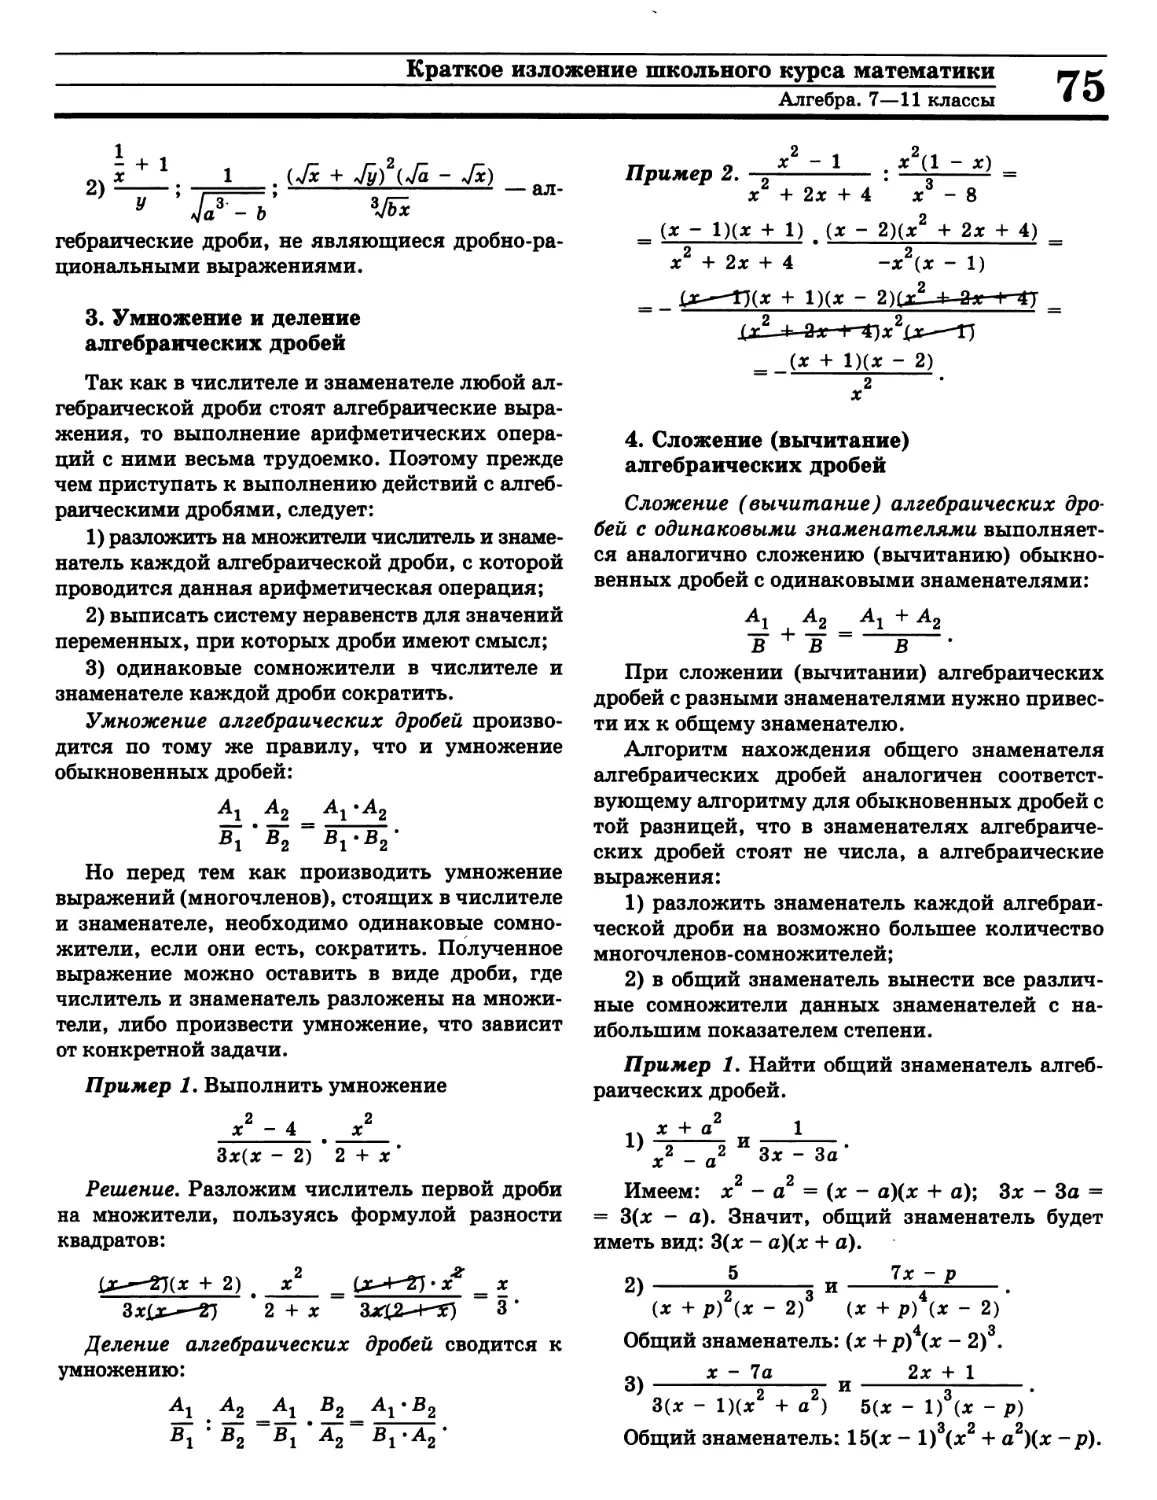 Вычитание алгебраических дробей
Деление алгебраических дробей
Сложение алгебраических дробей
Умножение алгебраических дробей